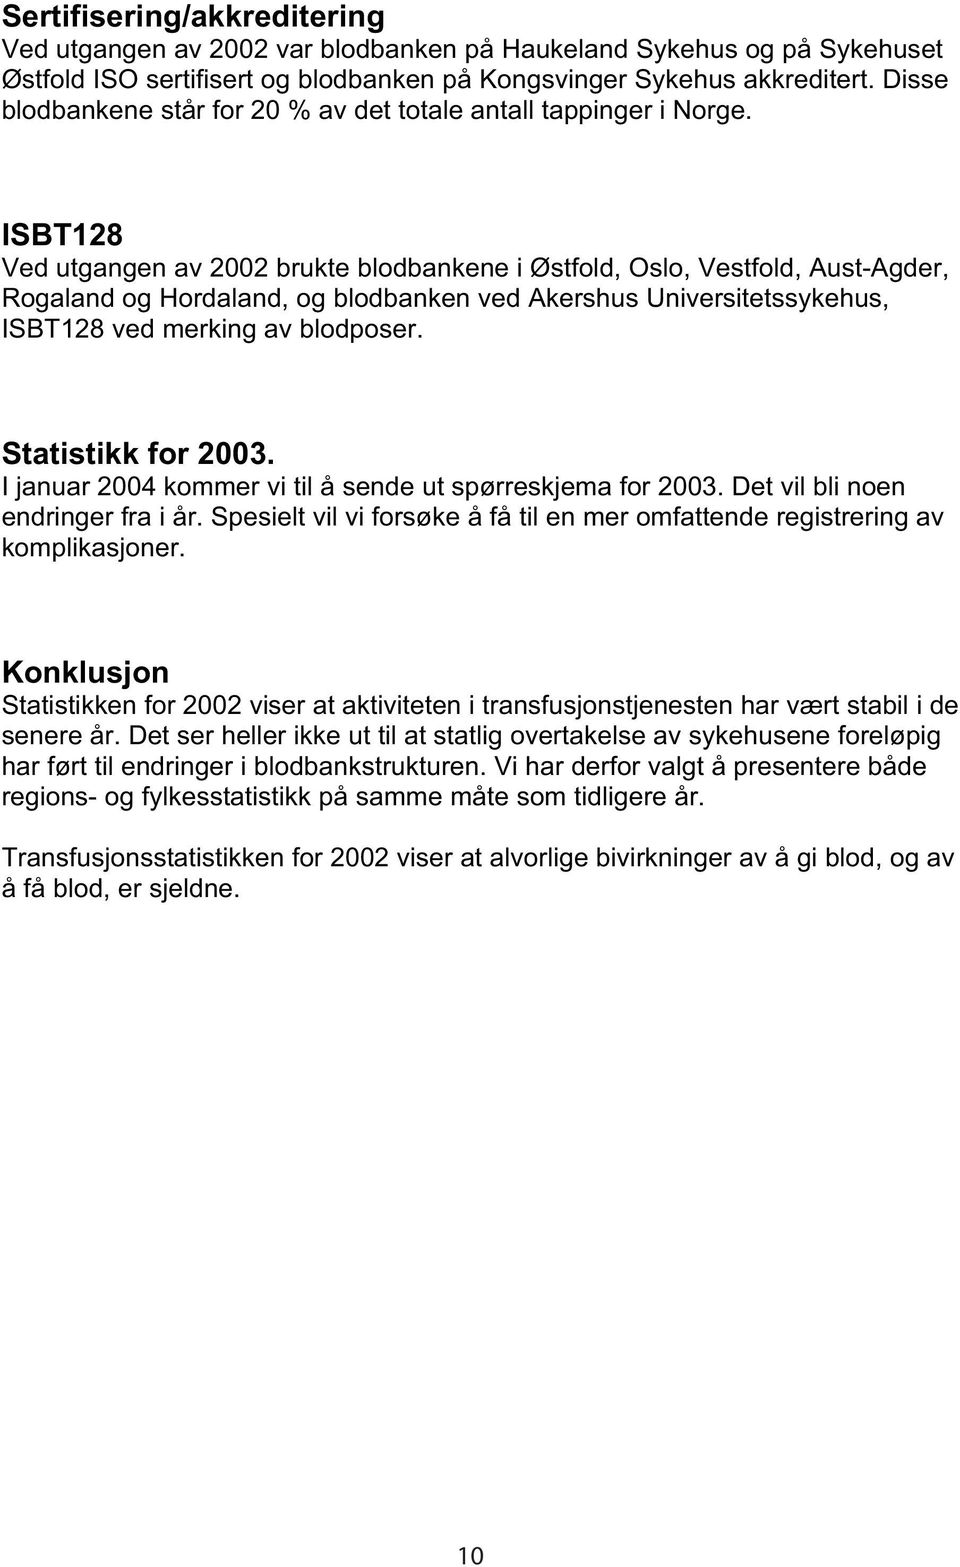 ISBT128 Ved utgangen av 2002 brukte blodbankene i Østfold, Oslo, Vestfold, Aust-Agder, Rogaland og Hordaland, og blodbanken ved Akershus Universitetssykehus, ISBT128 ved merking av blodposer.